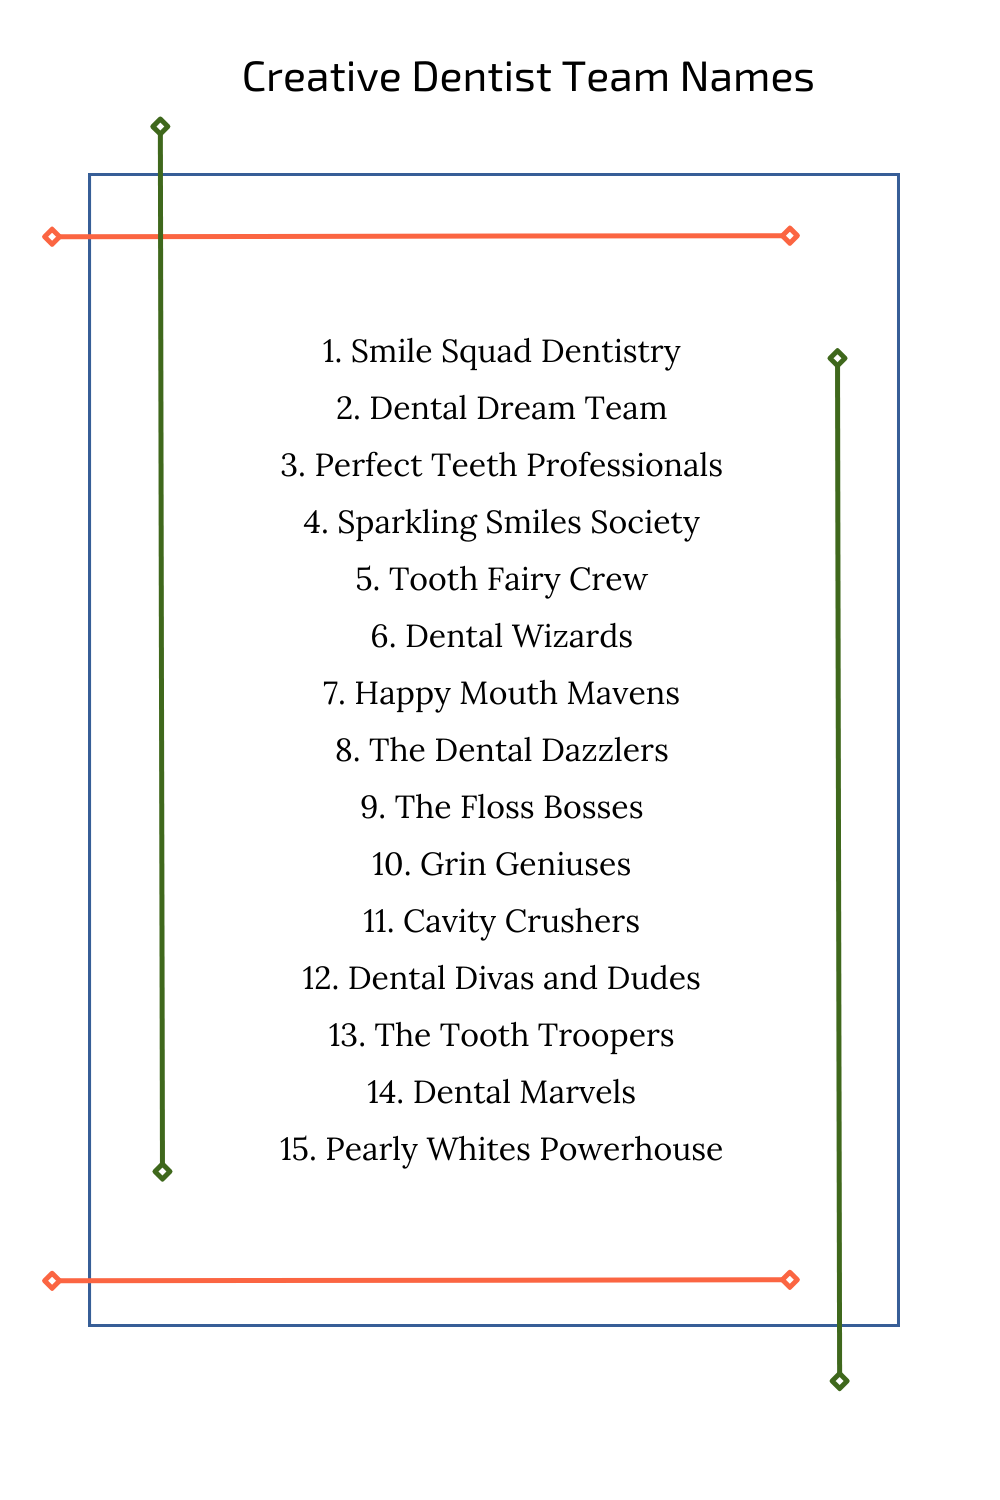 Creative Dentist Team Names